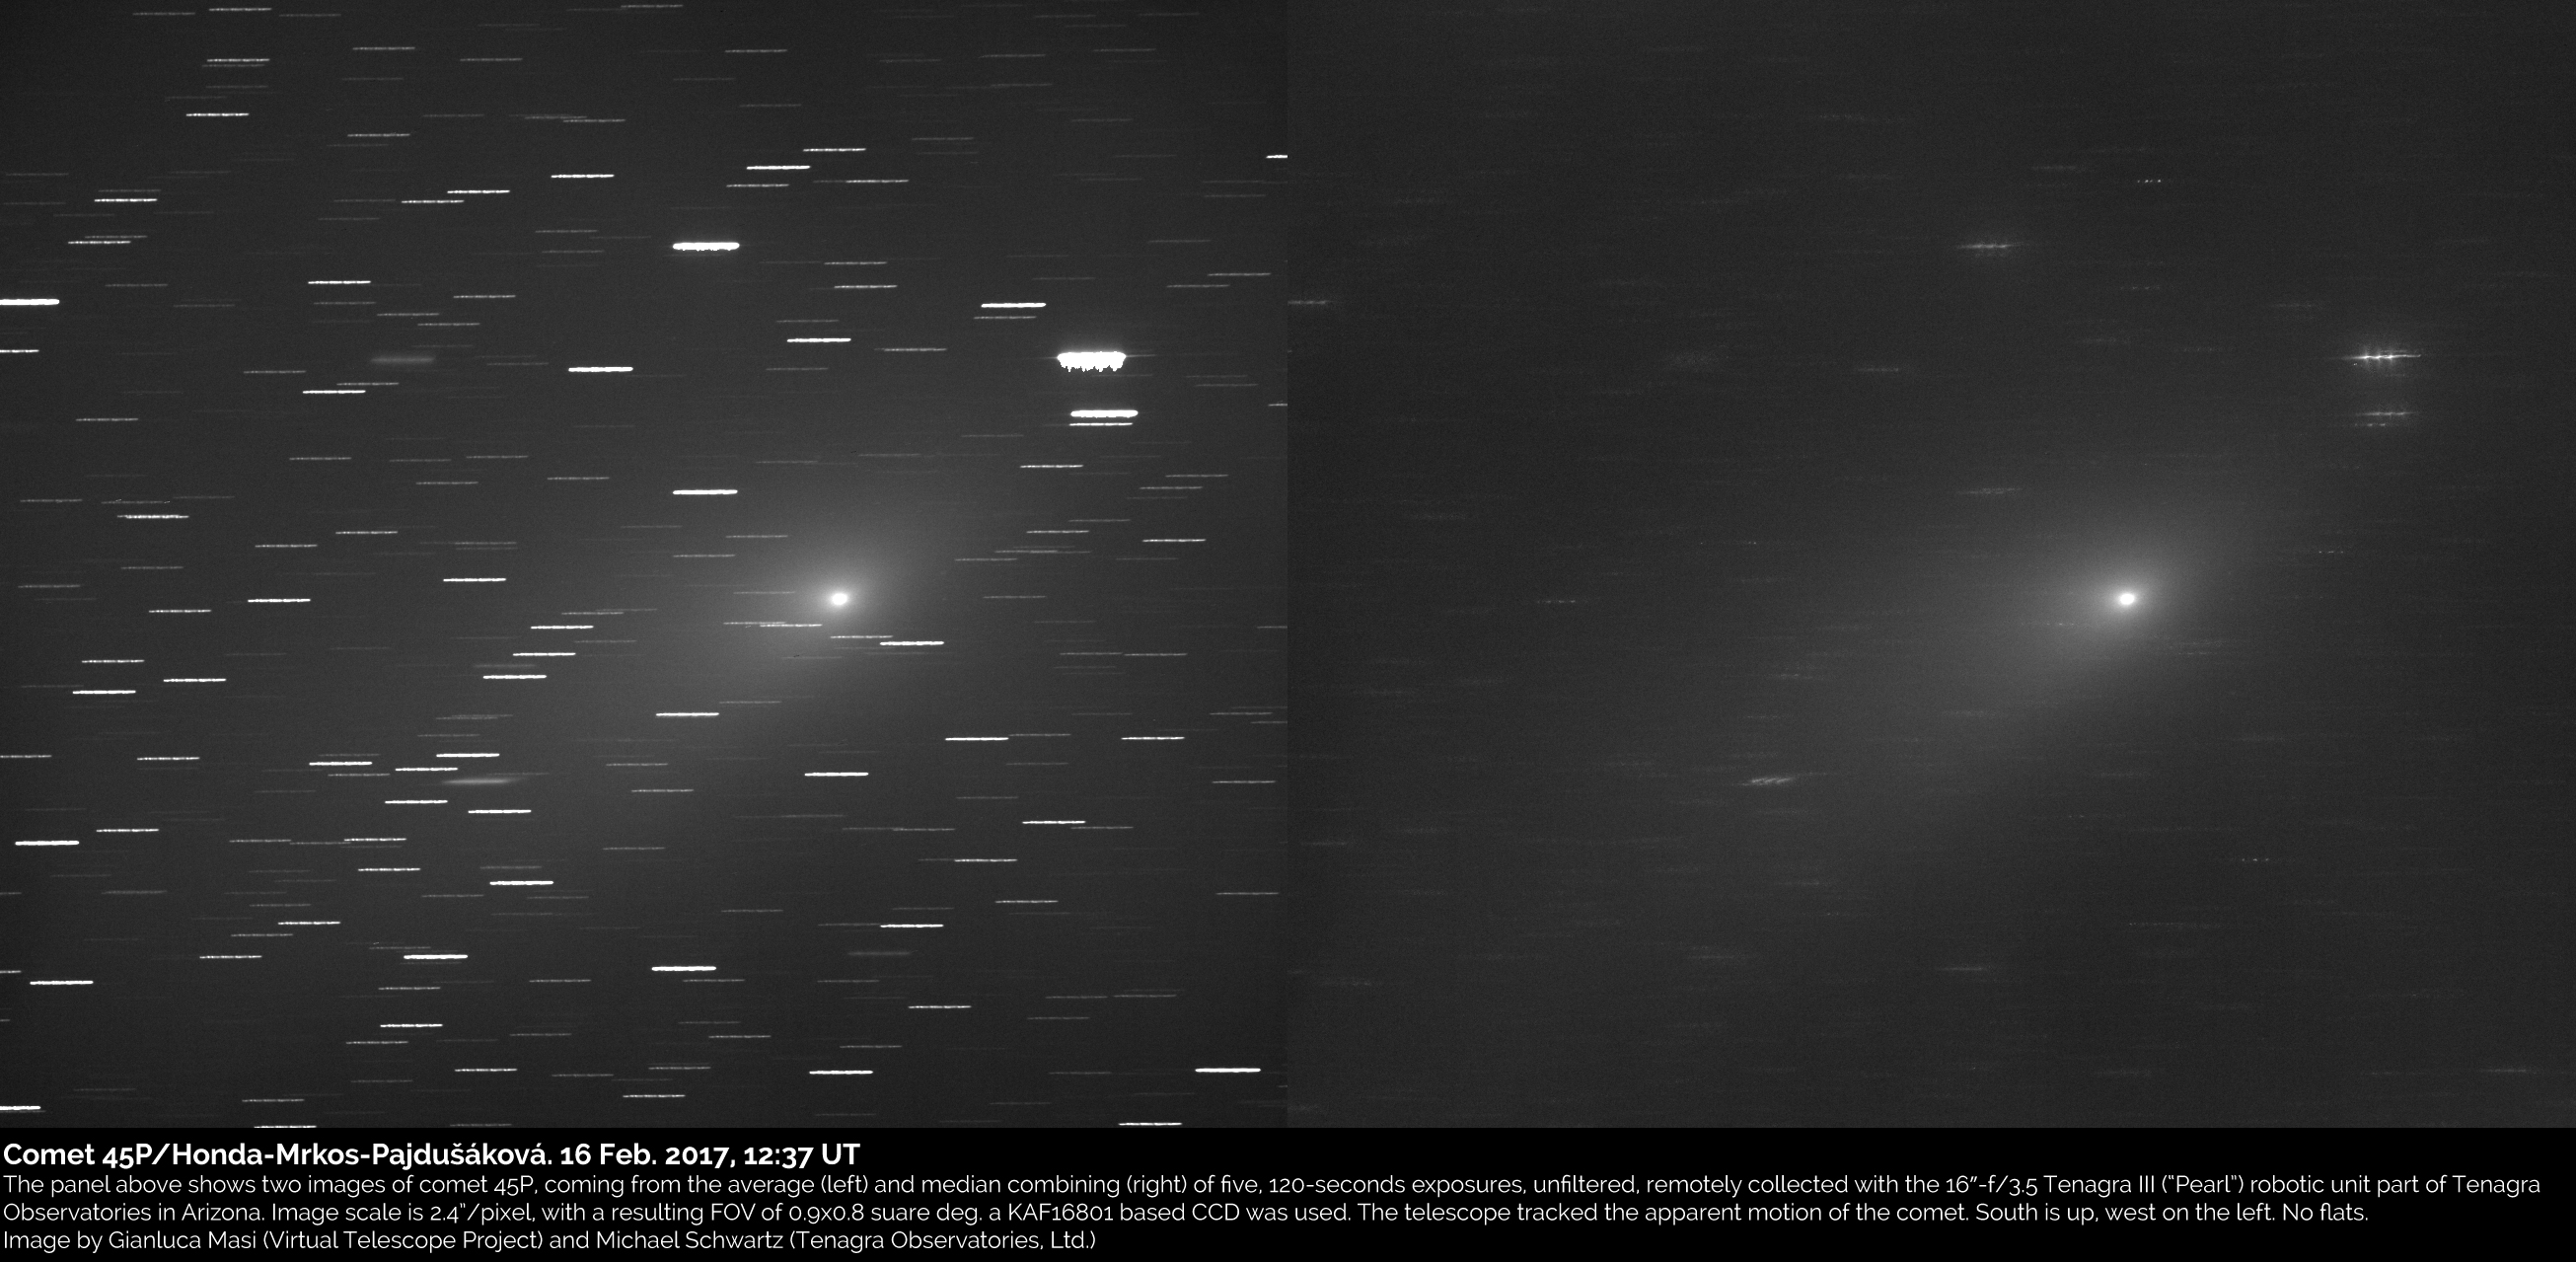 Comet 45P/HondaMrkosPajdusakova an image (16 Feb. 2017